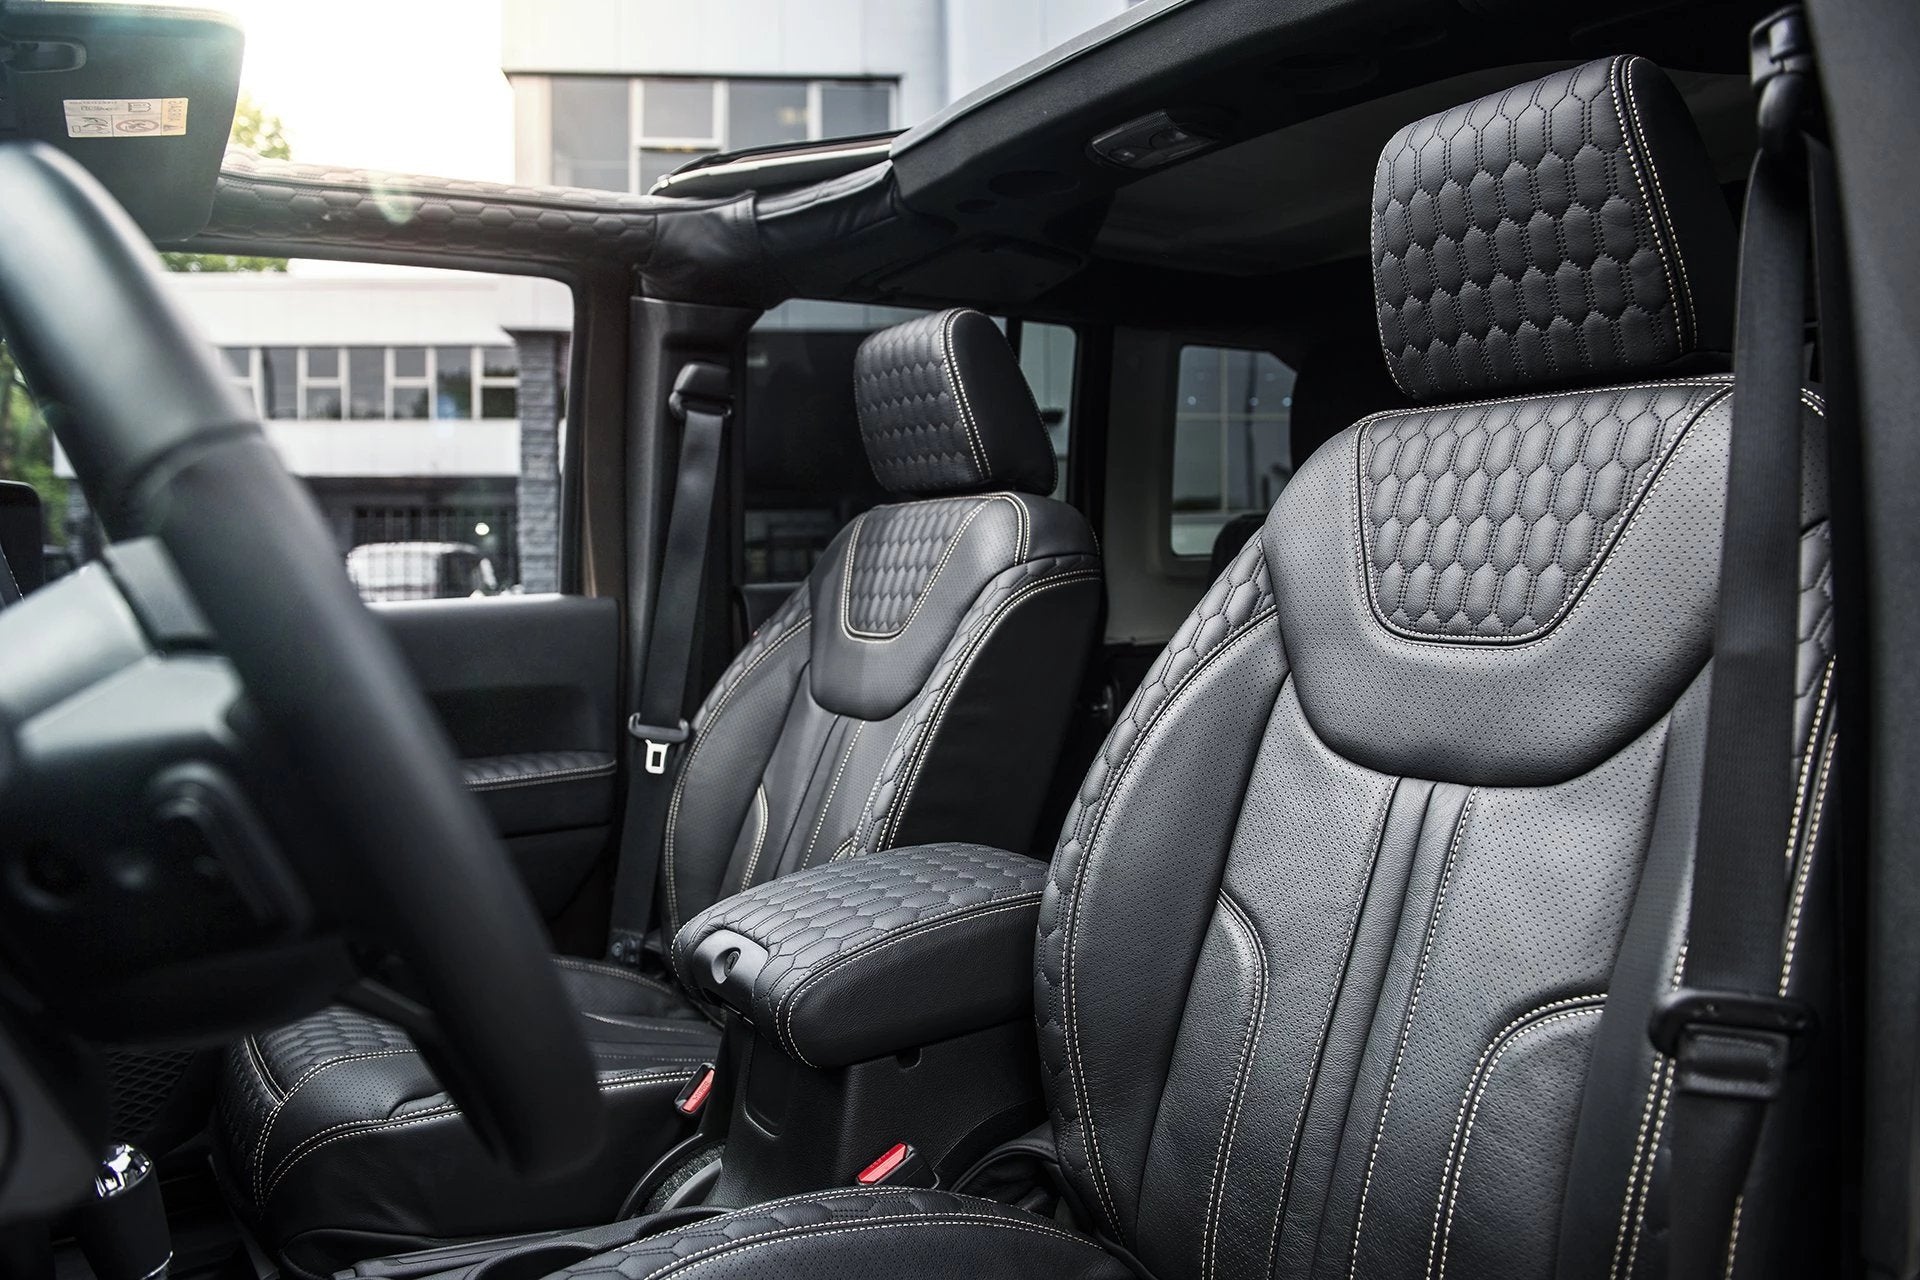 Jeep Wrangler JK 4 Door (2013-2018) Comfort Leather Interior - Project Kahn